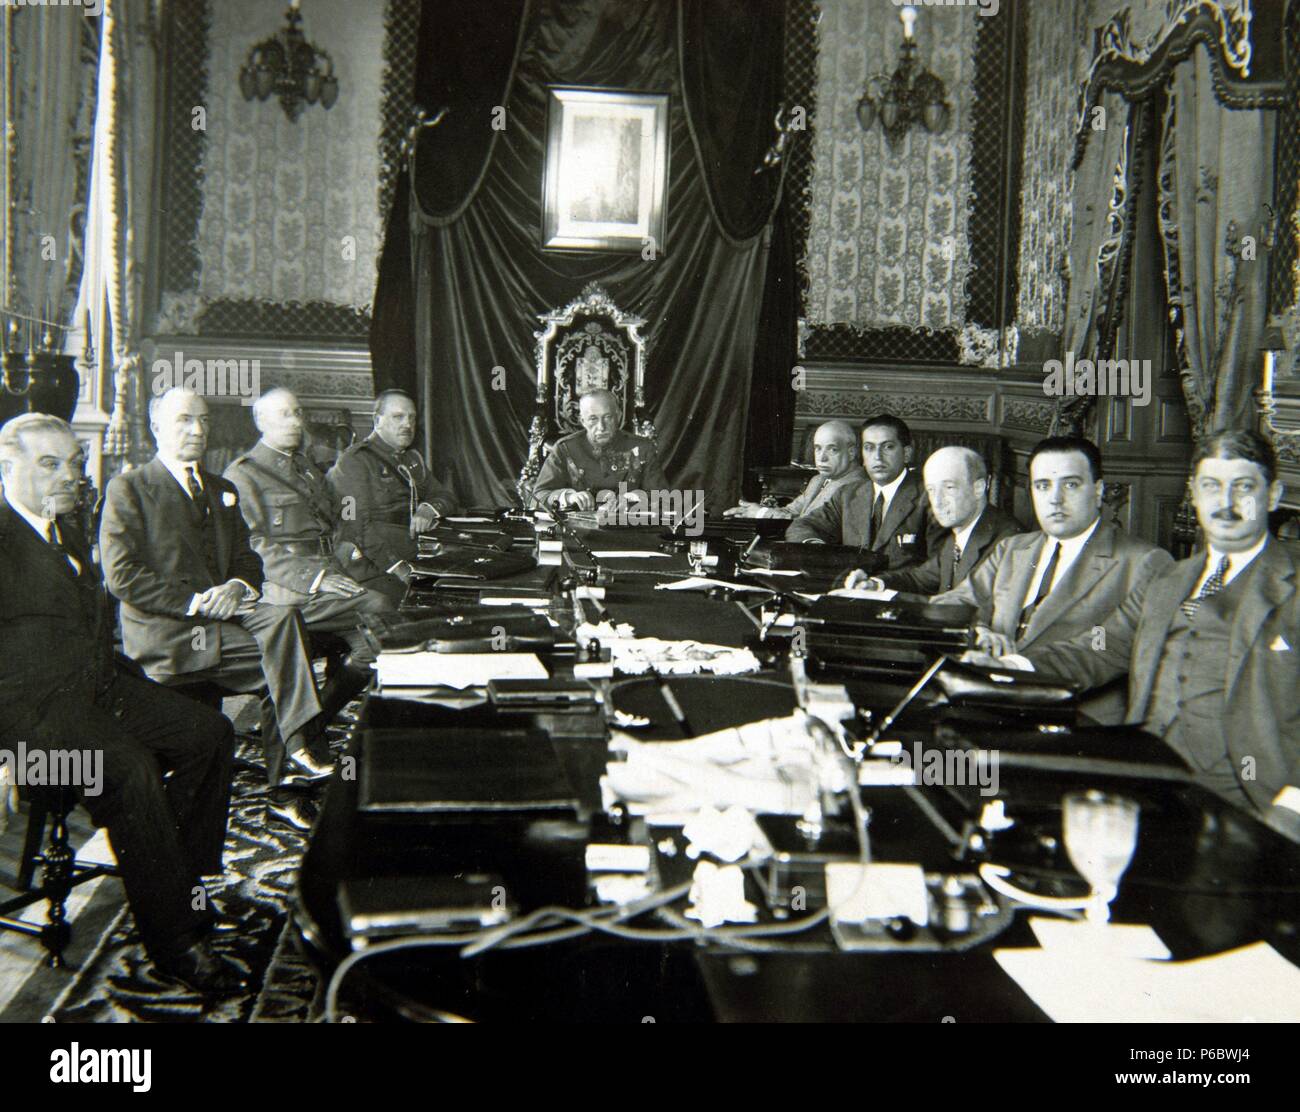 PRIMO DE RIVERA , MIGUEL. POLITICO Y MILITAR ESPAÑOL. JEREZ DE LA FRONTERA 1870 - 1930. PRESIDIENDO UN CONSEJO DE MINISTROS. Stock Photo